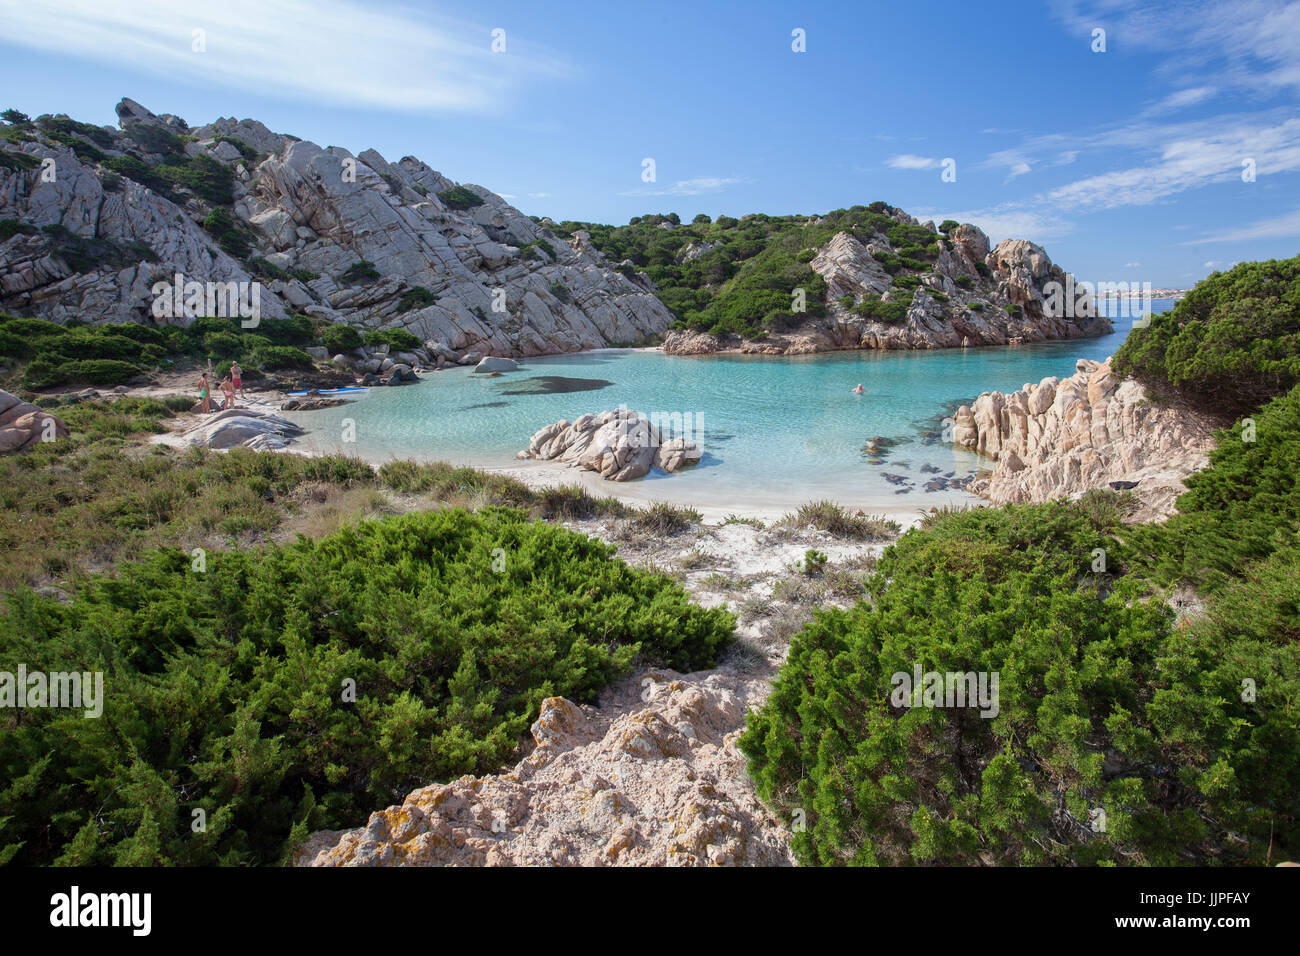 Spiaggia di Cala Napoletana, Caprera - Maddalena, Sardinia, Italy Stock Photo